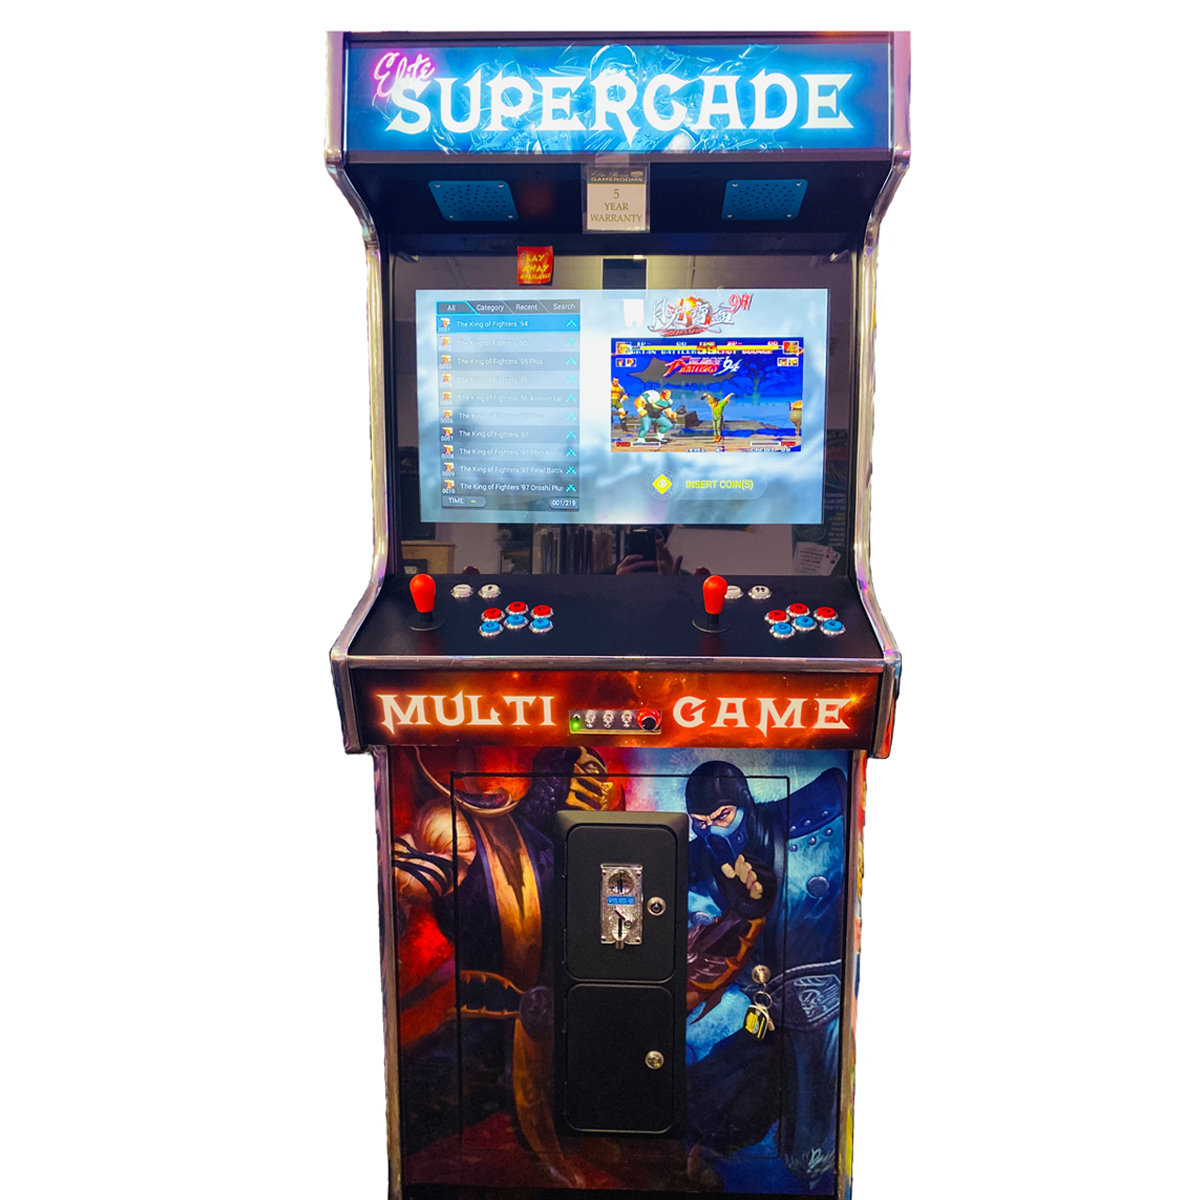 Supercade 2183 in 1 Multicade Arcade